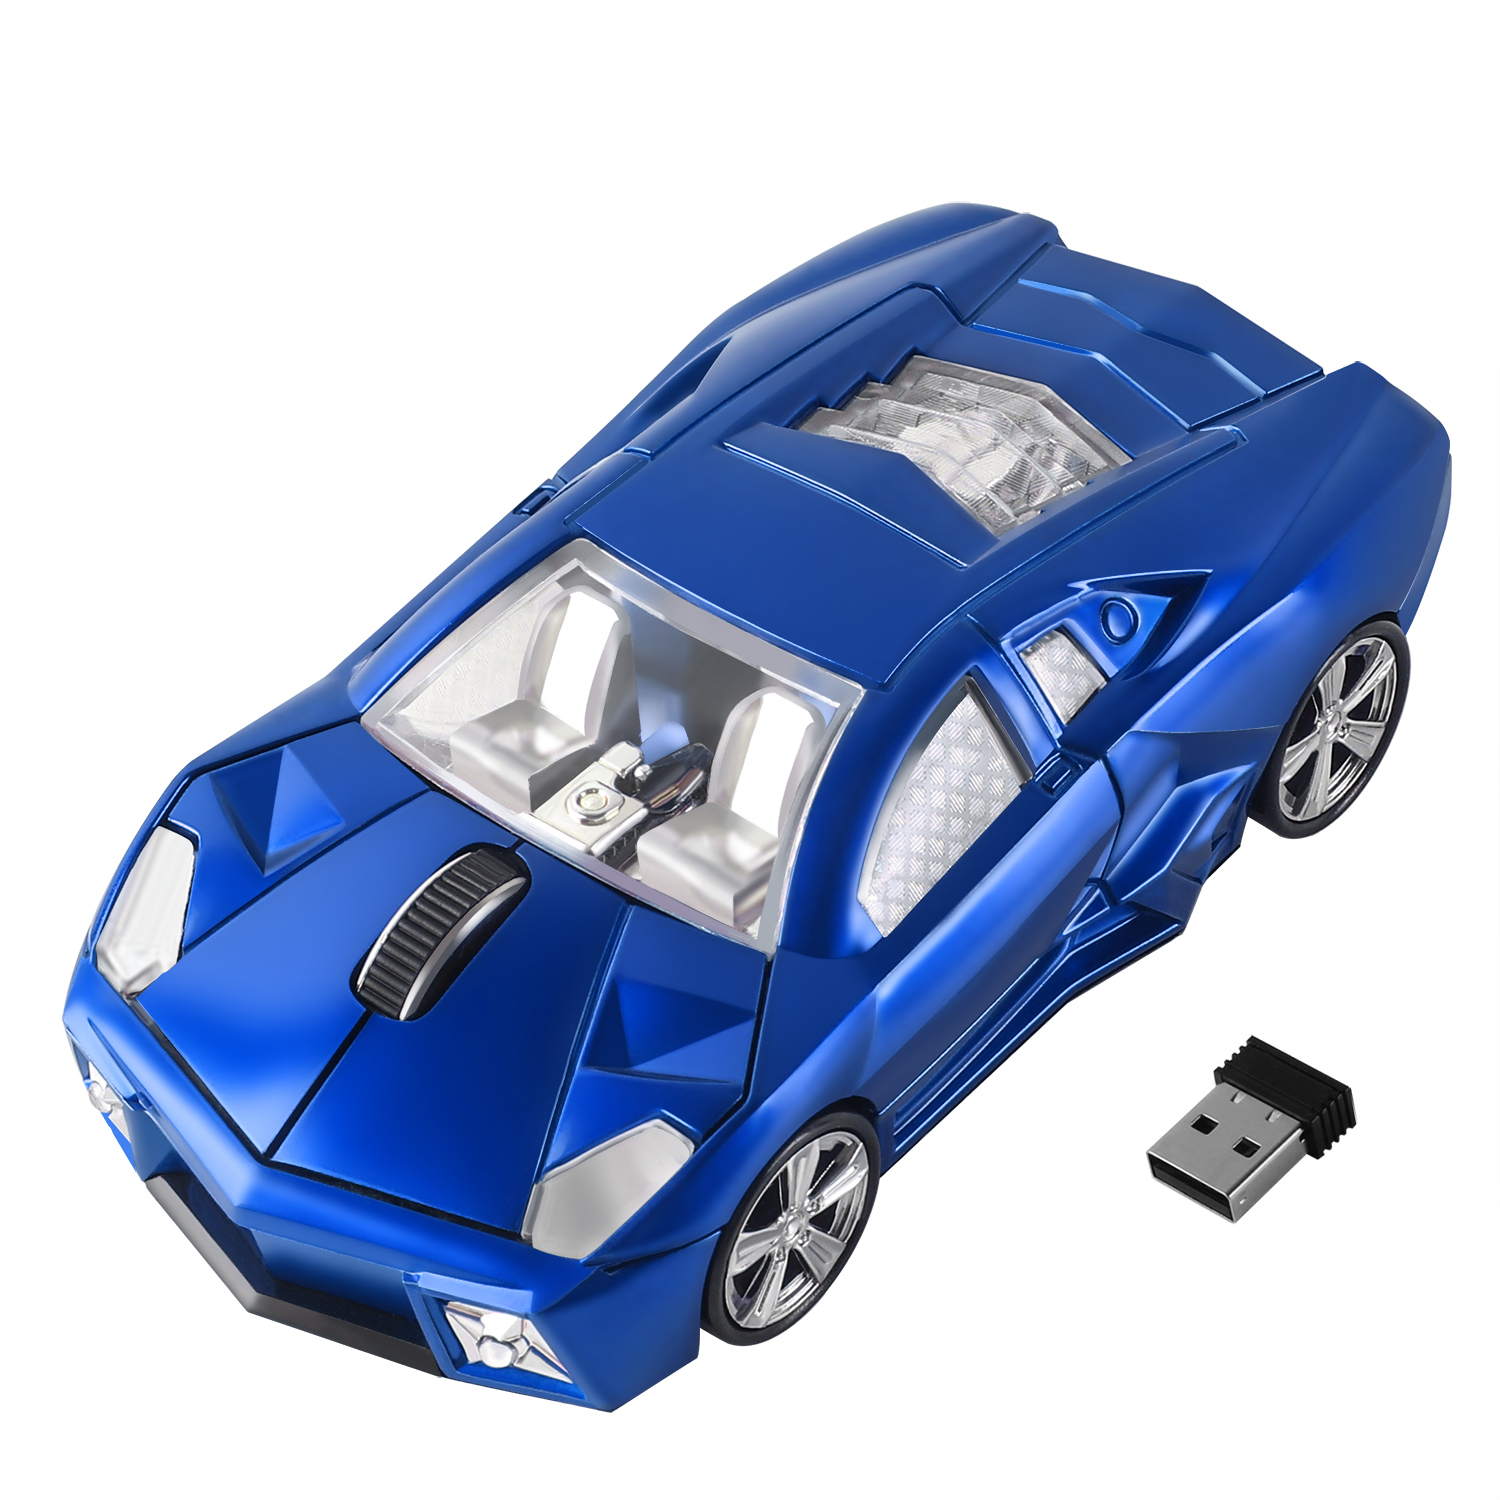 2-4G-Traadita-Hiir-Ergonoomiline-Sport-Auto-Disain-Mängimine-Mause-1600-DPI-USB-Optical-Kids-Gift (7)